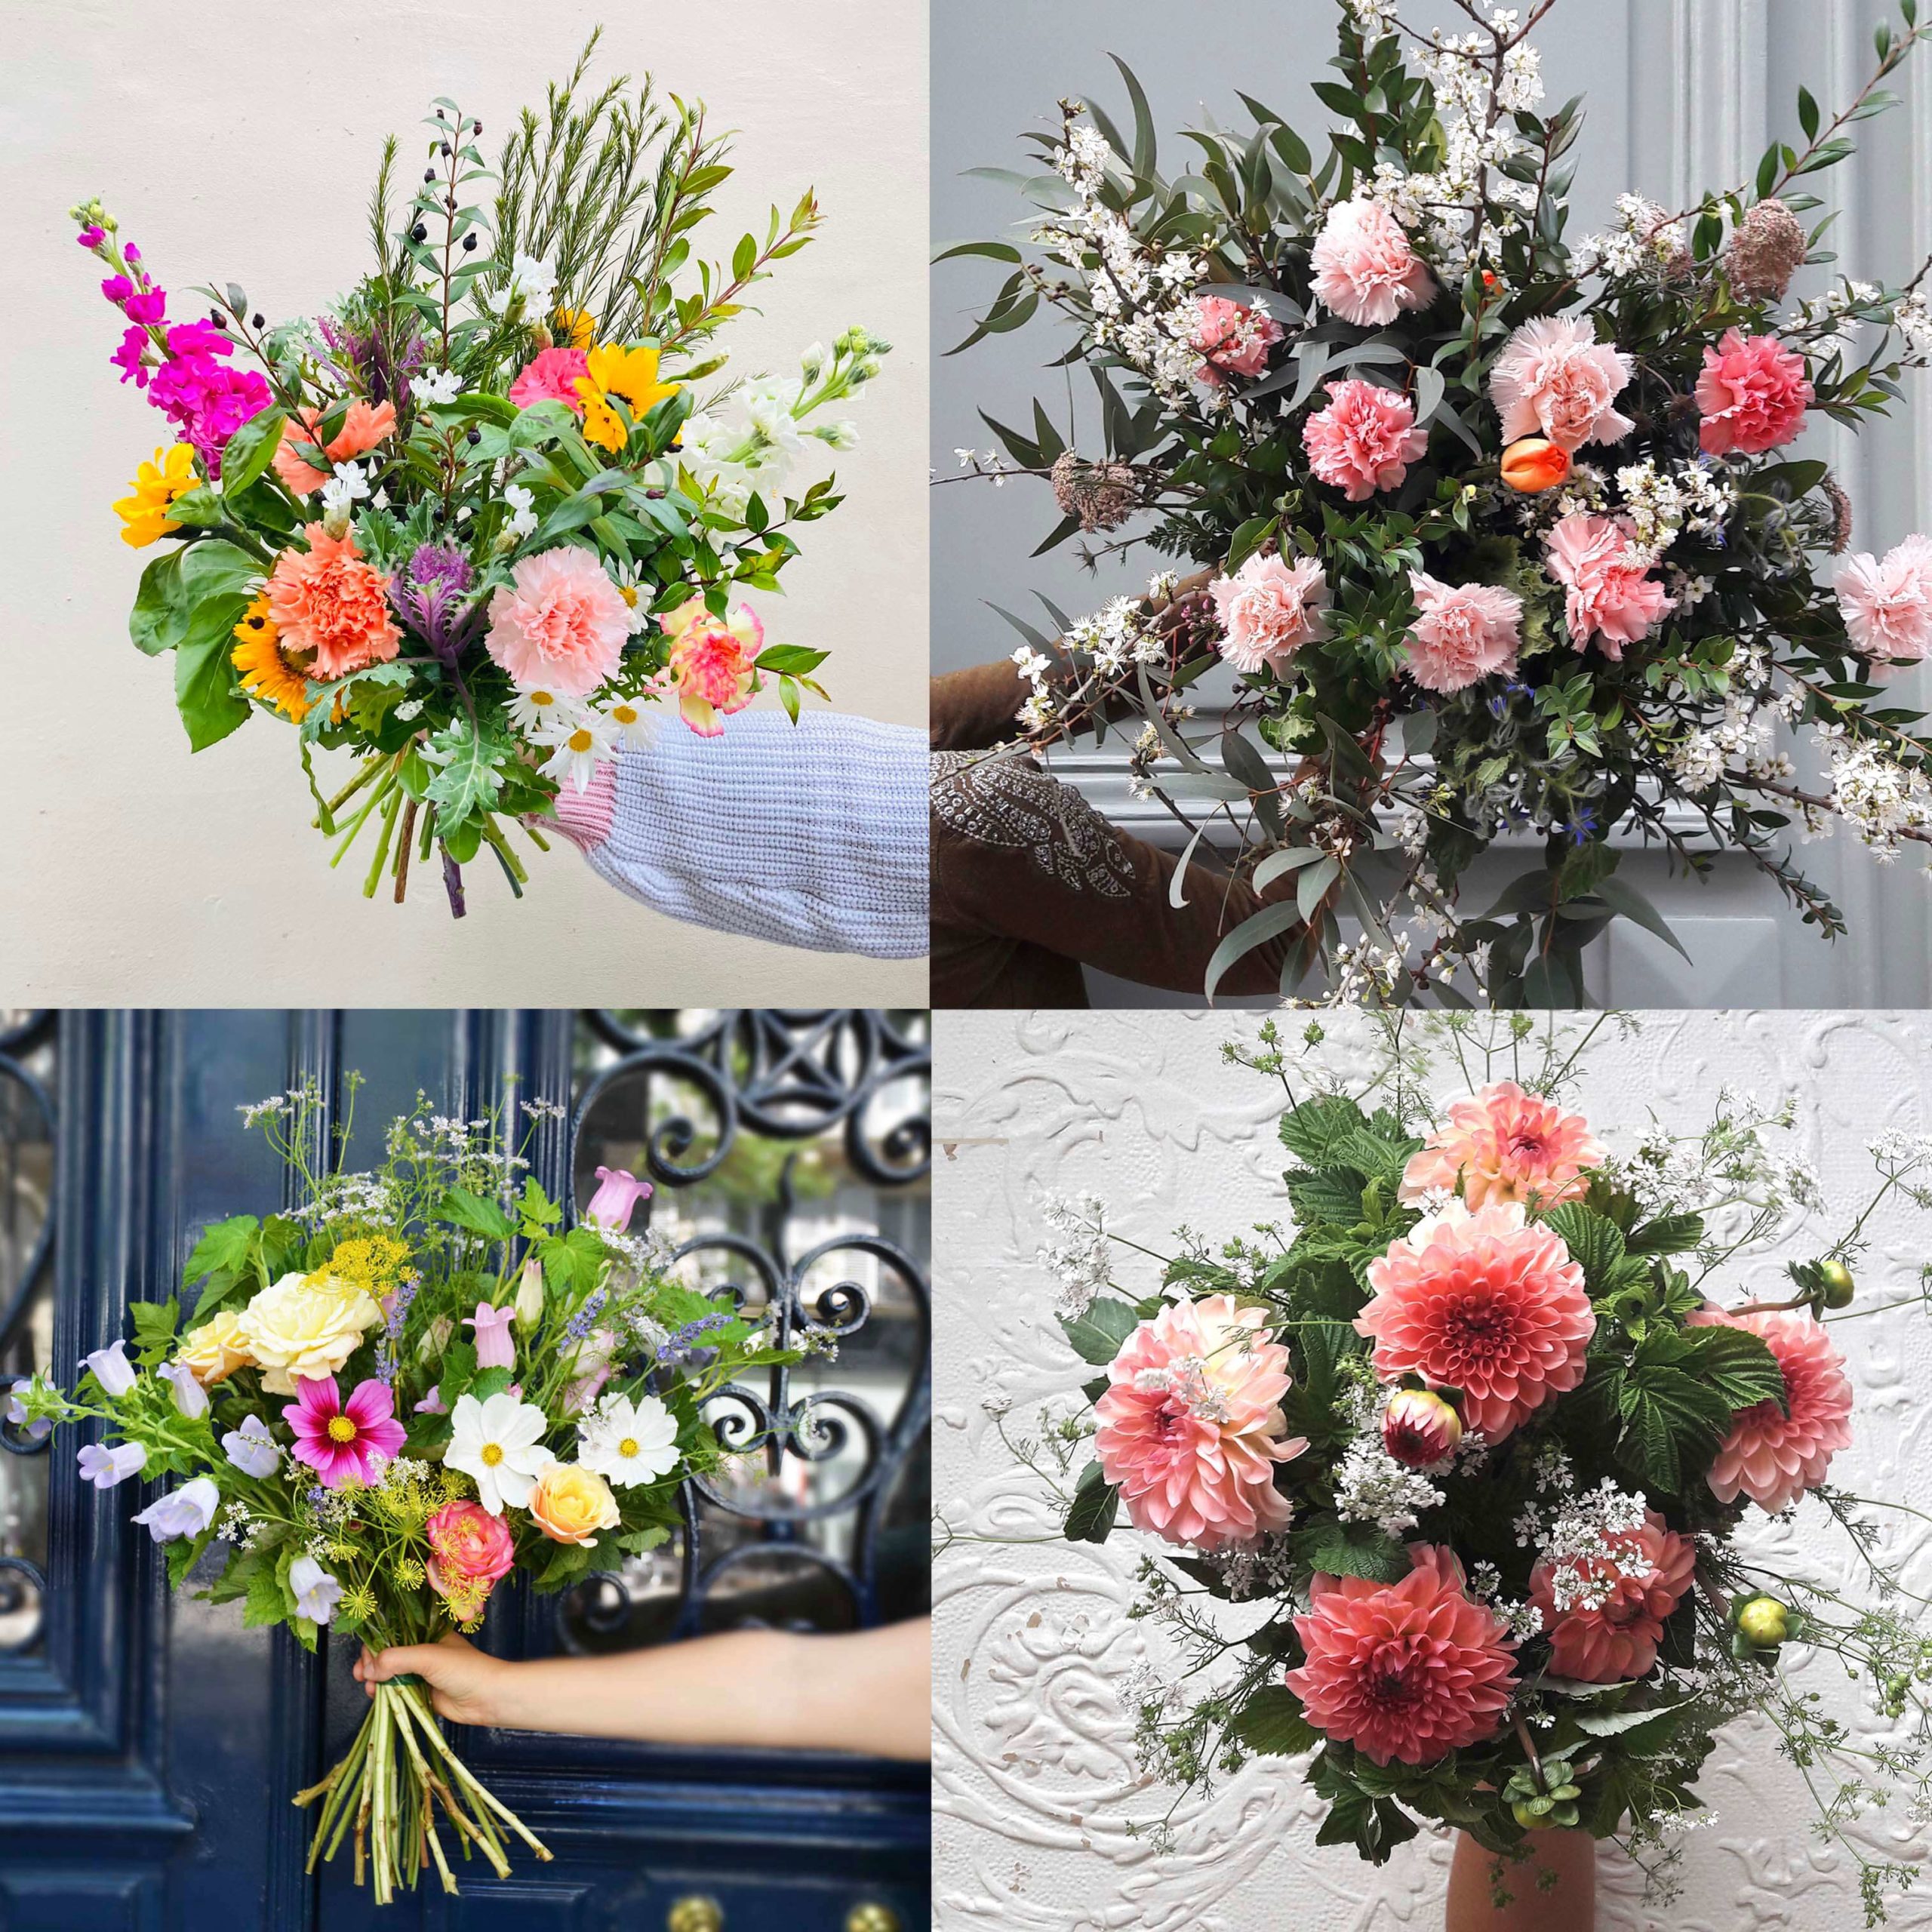 Abonnement box florale - Fleurivore